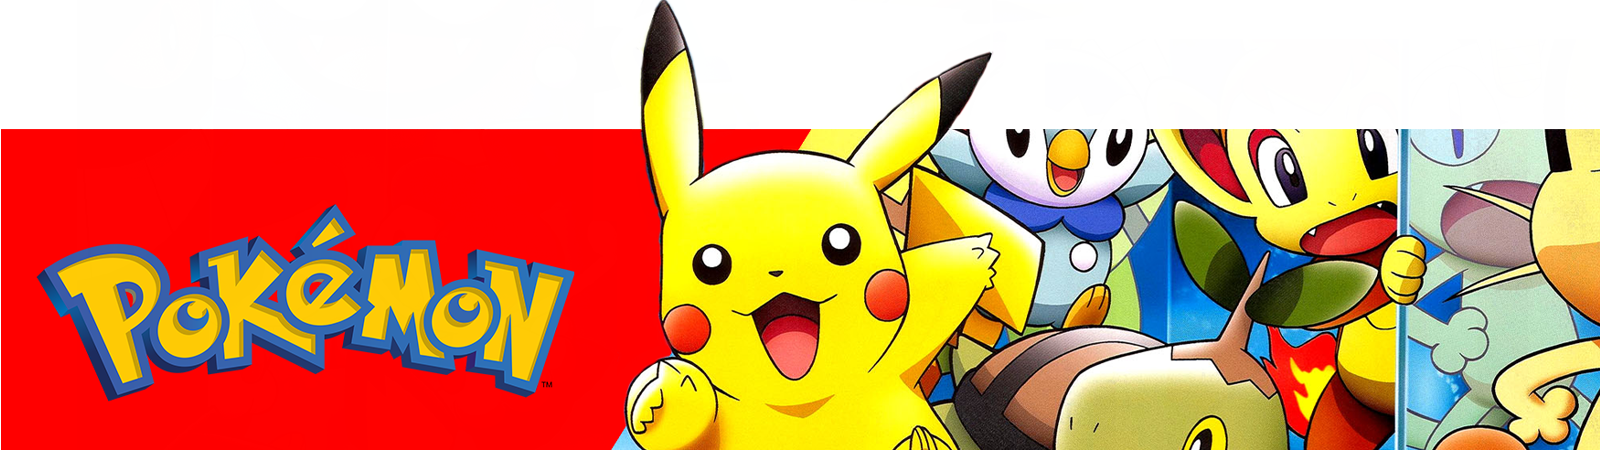 Brinquedo Pokebola Pokémon Pikachu Bulbasaur Ataque Surpresa em